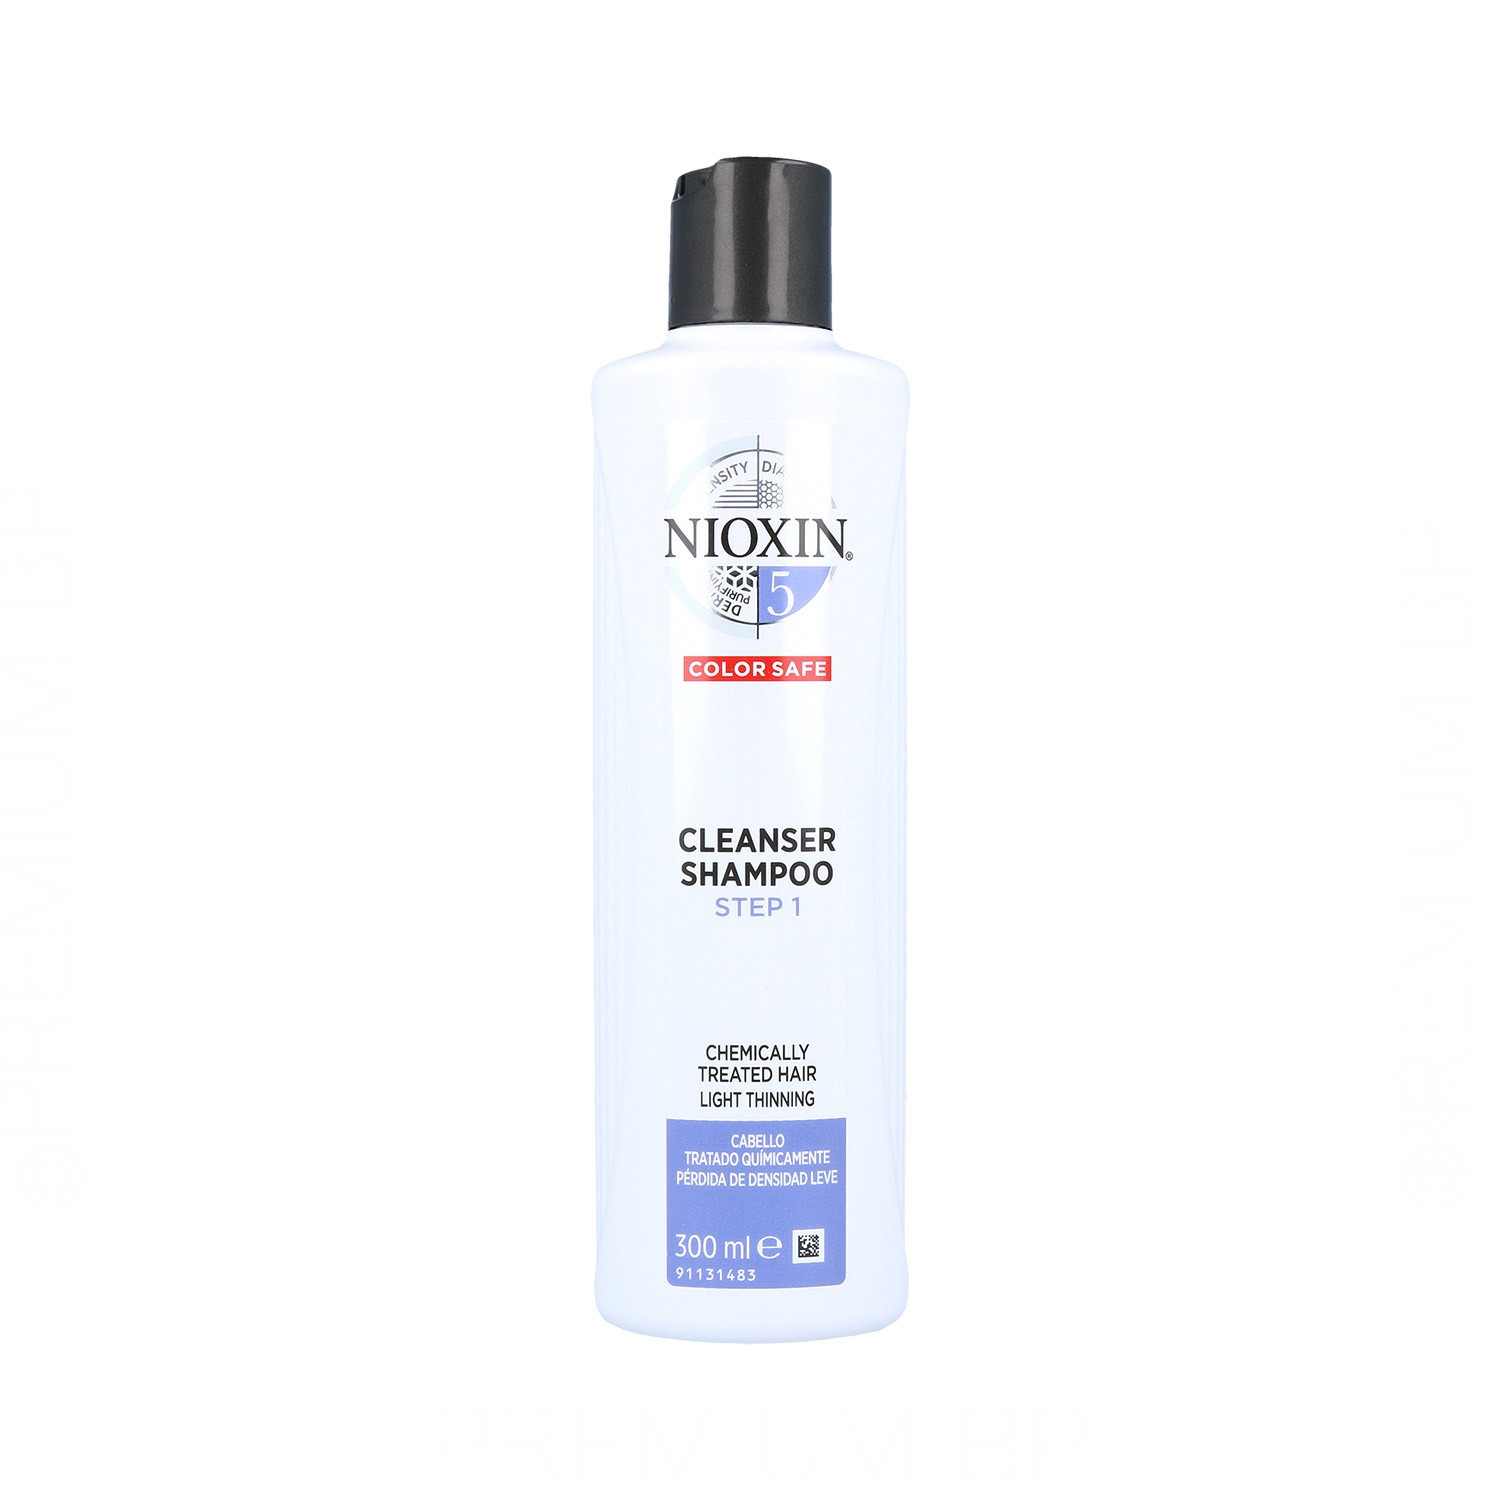 Nioxin Clean System 5 Shampoo delicato per capelli trattati 300 ml